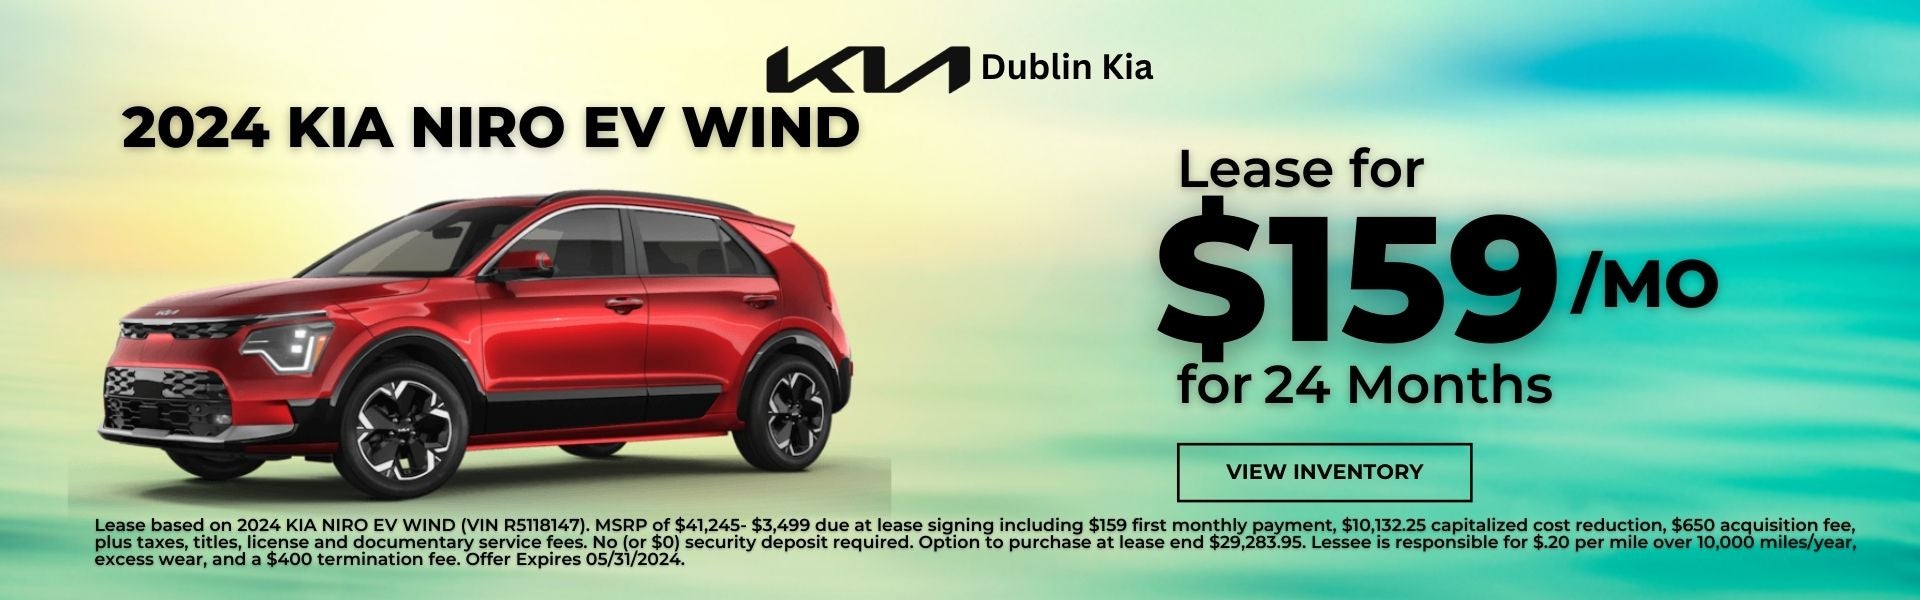 2024 Kia Niro EV Wind Lease Offer